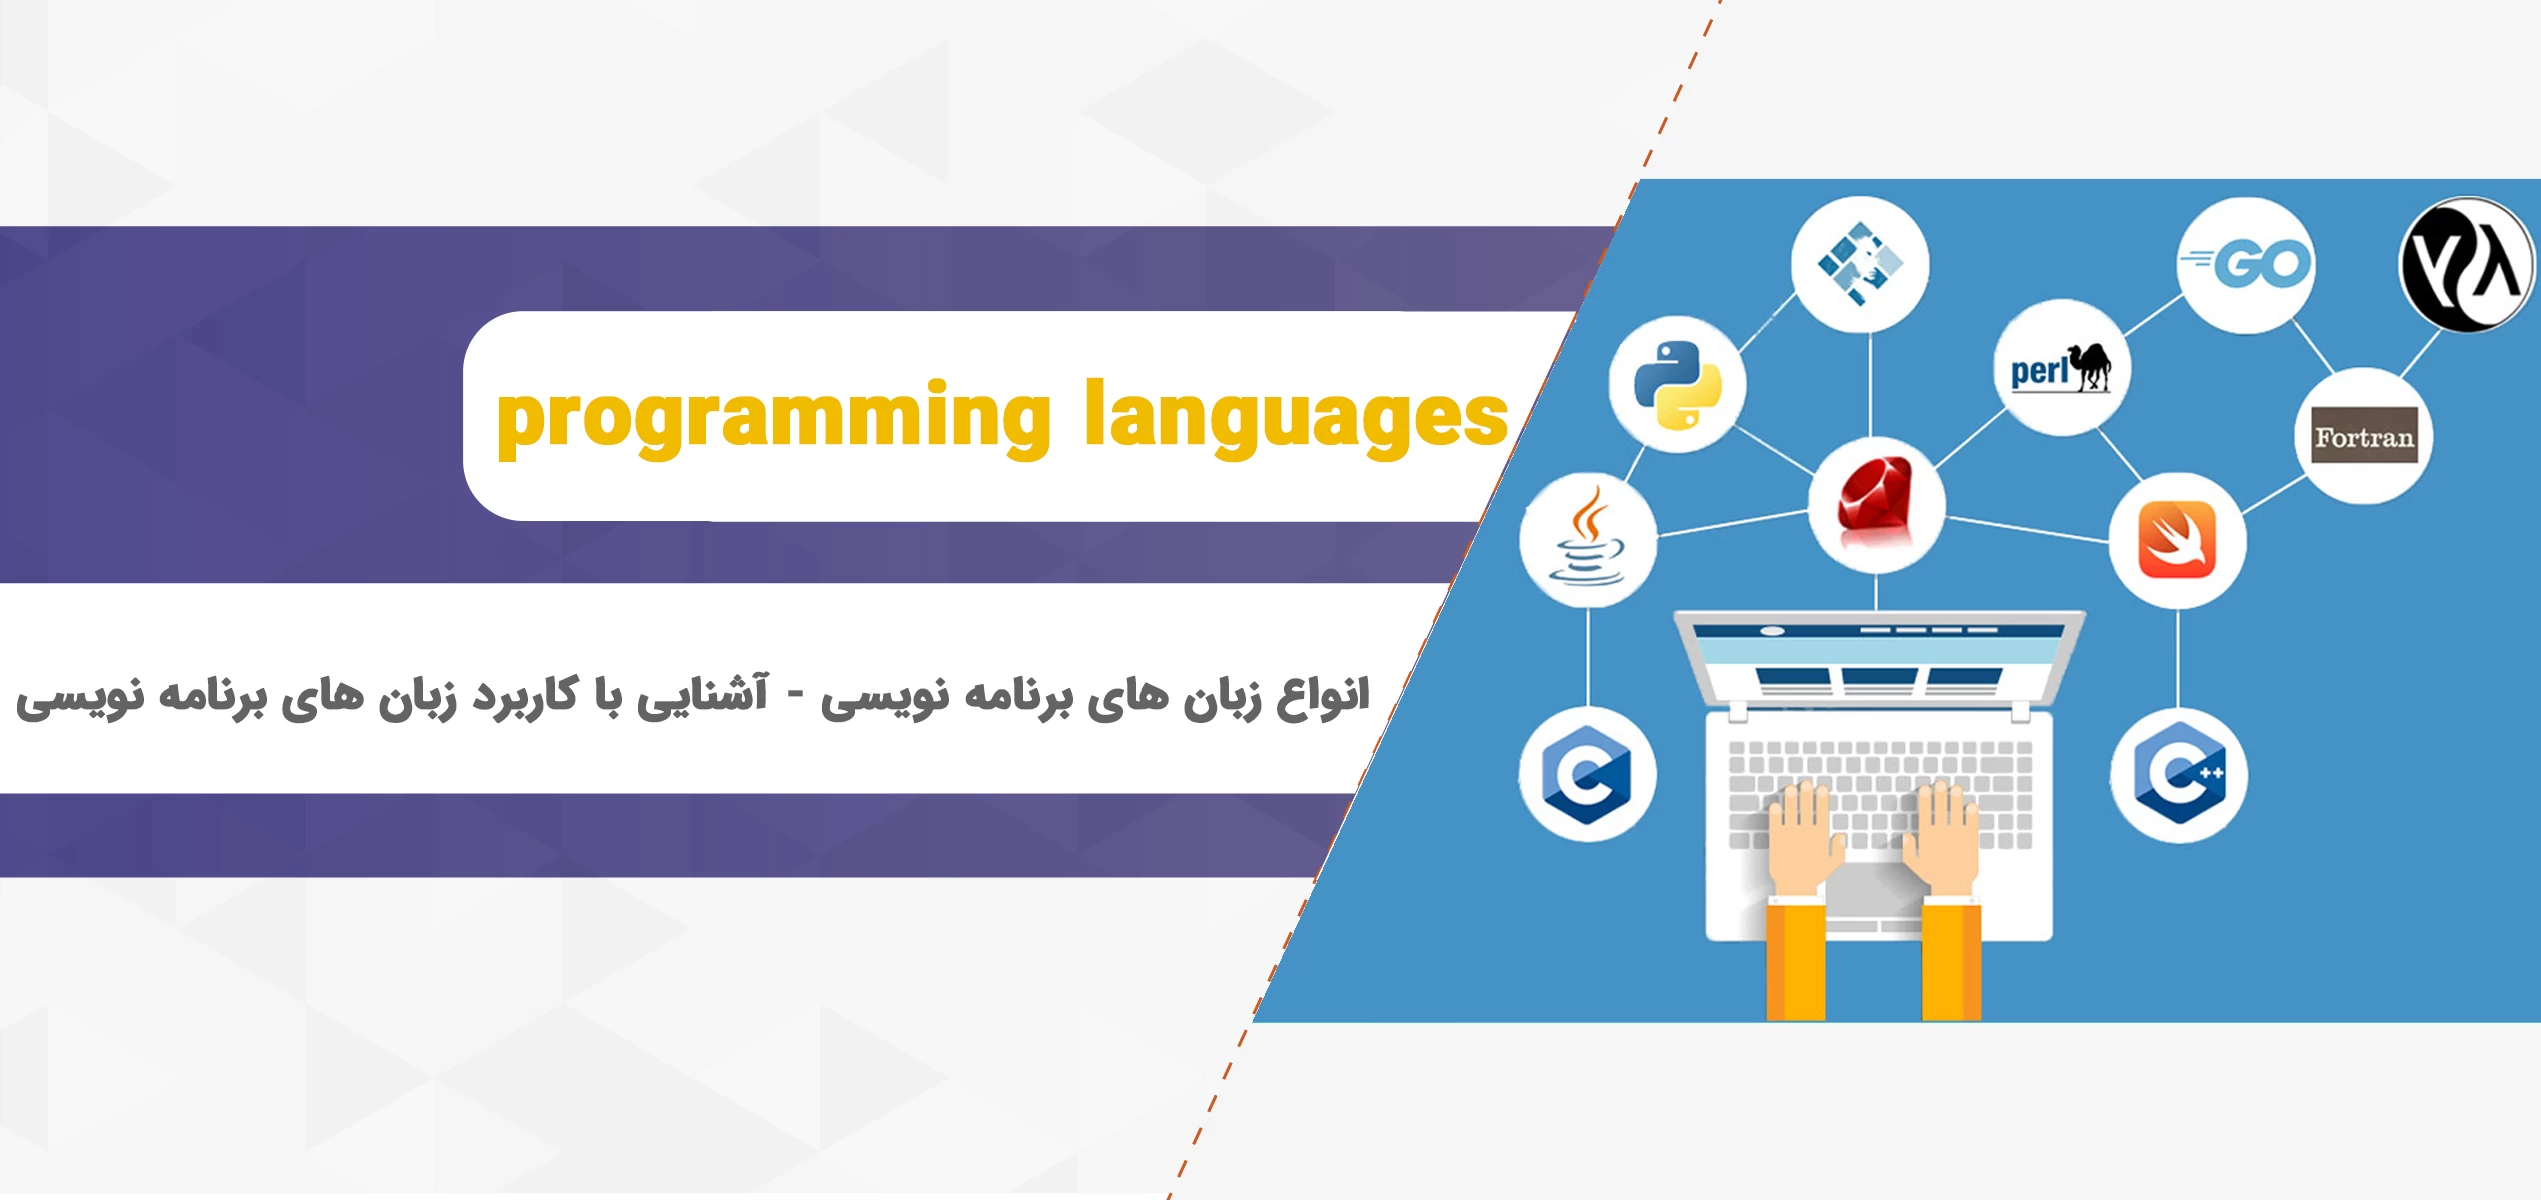 انواع زبان های برنامه نویسی - آشنایی با کاربرد زبان های برنامه نویسی